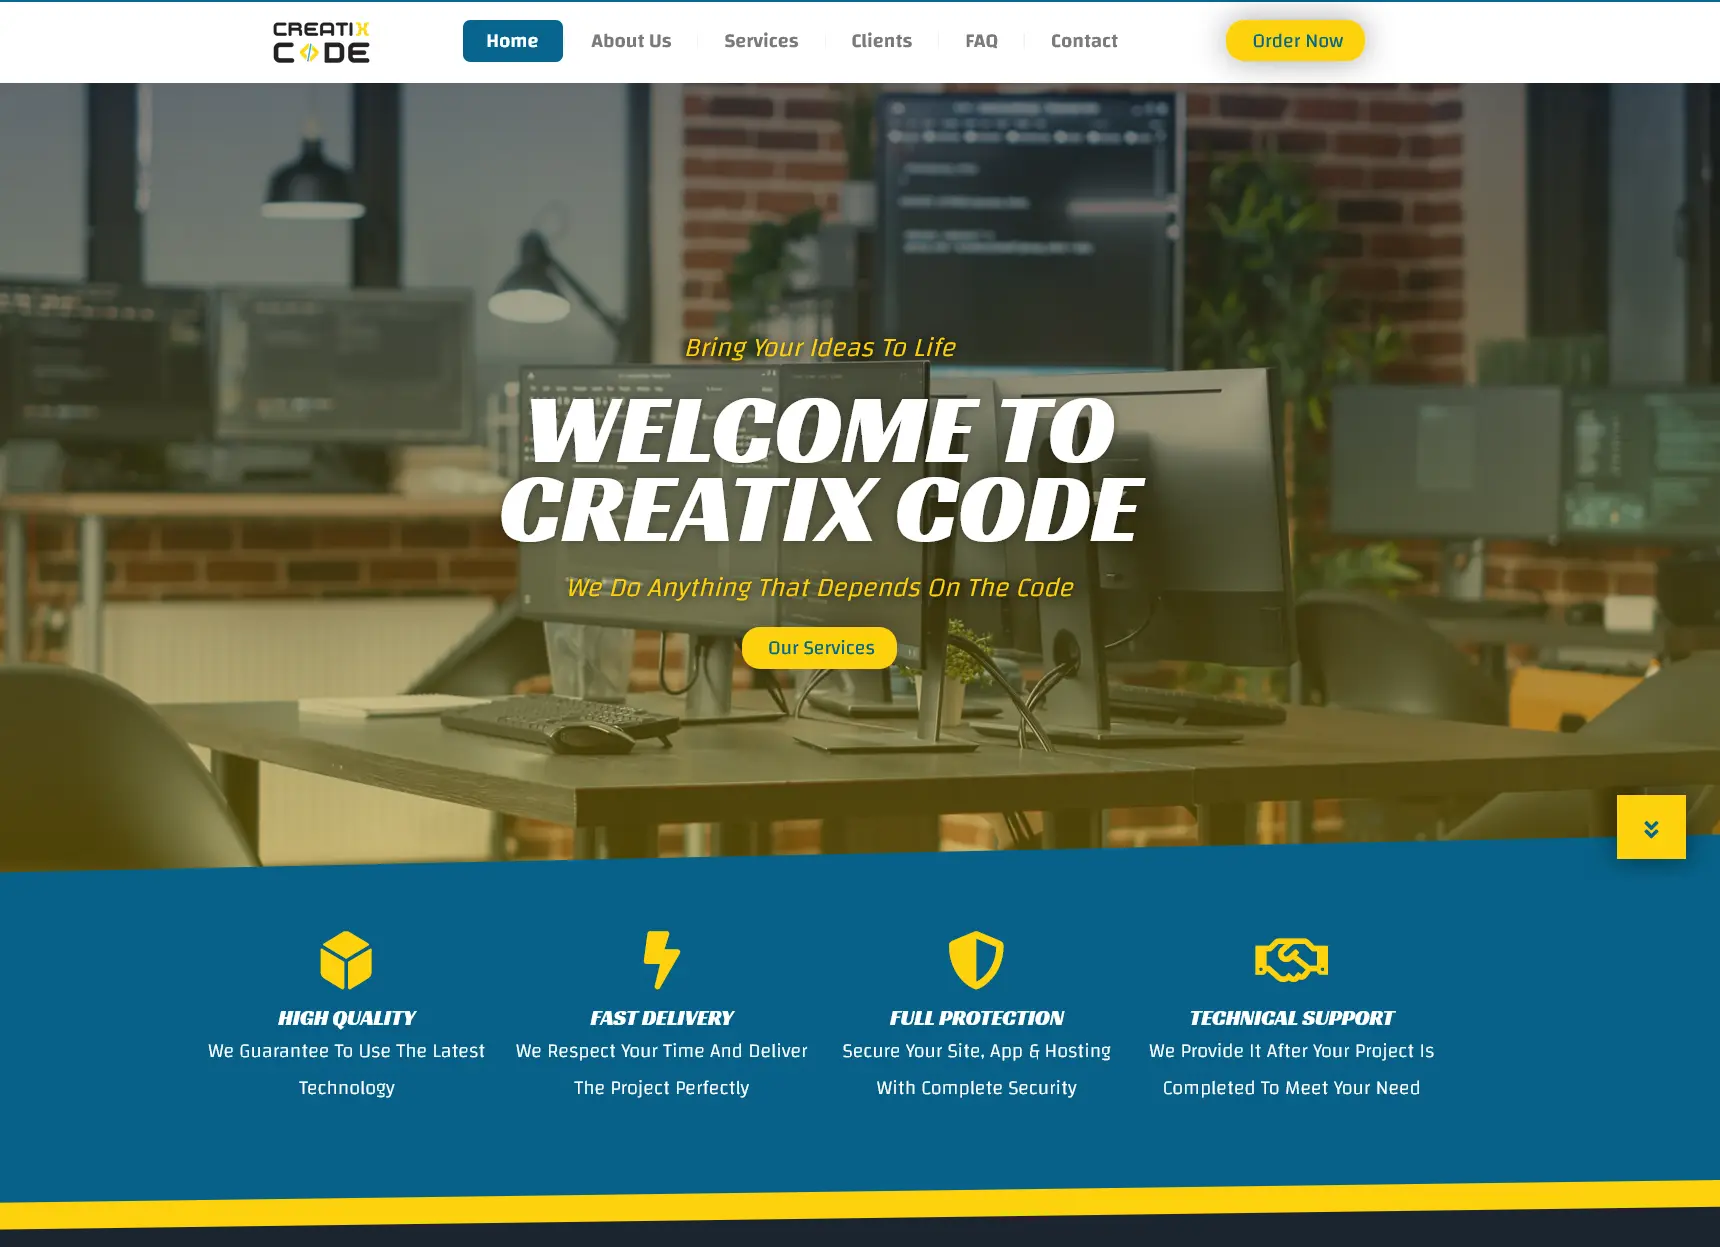 تصميم وتطوير موقع Creatix Code بآمستردام هولندا